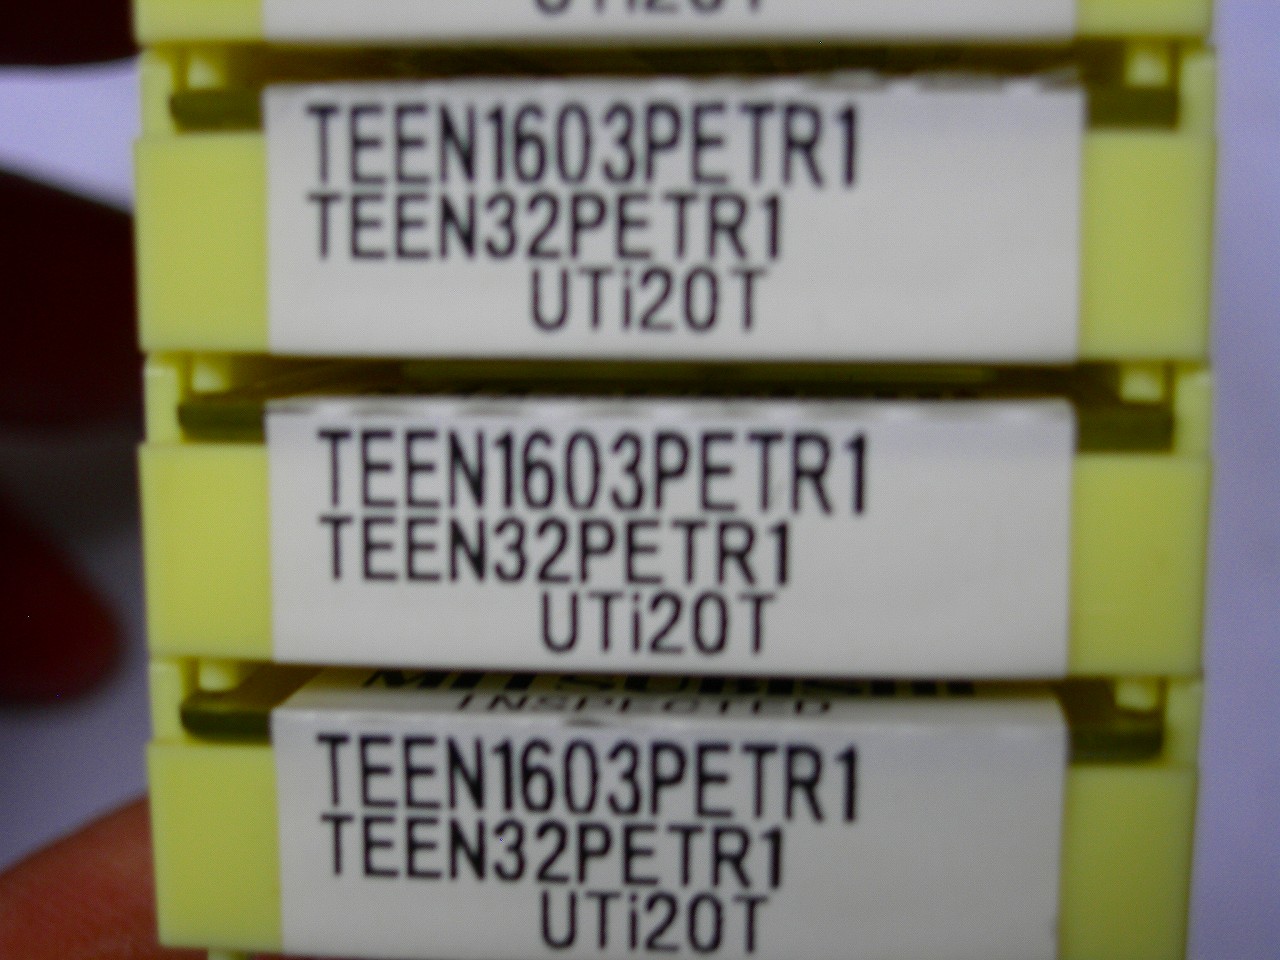 三菱マテリアル　TEEN1603PETR1 UTi20T